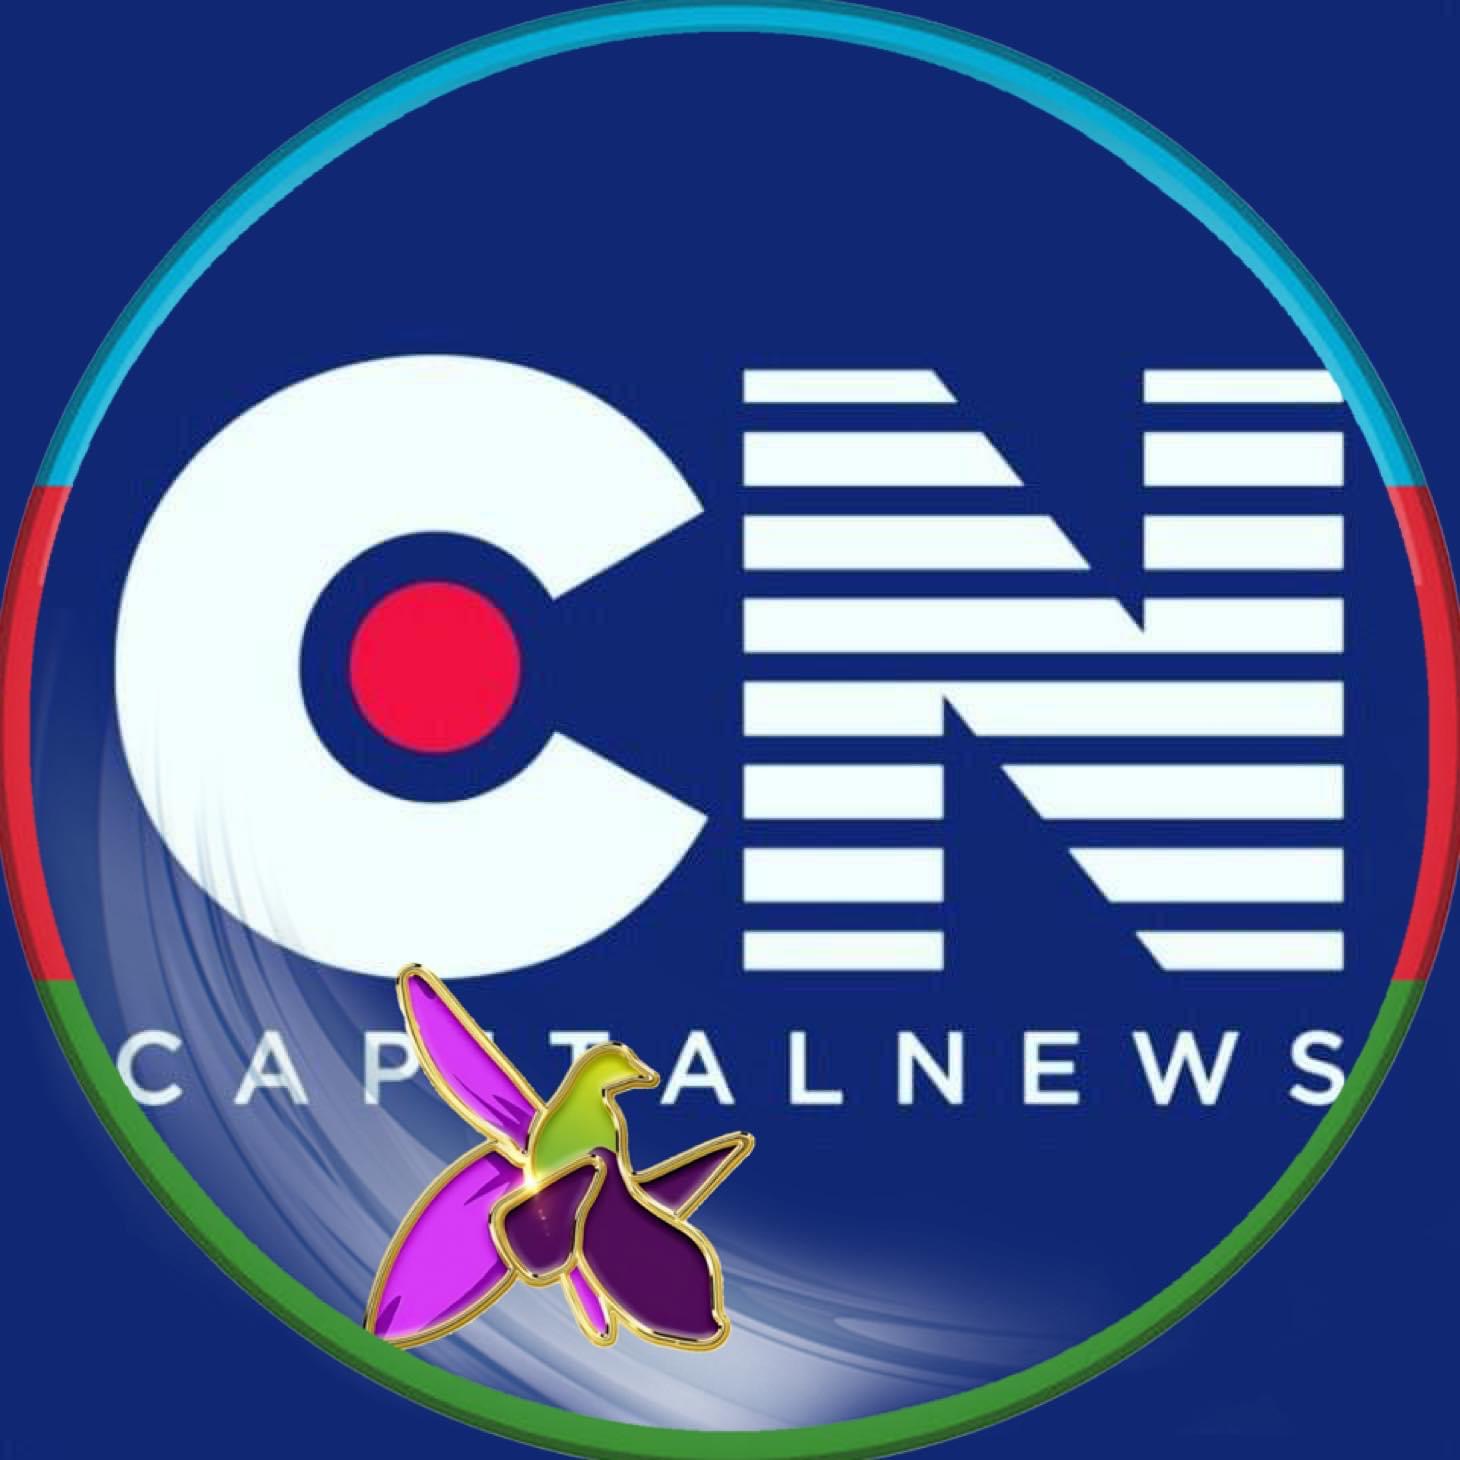 Capital News